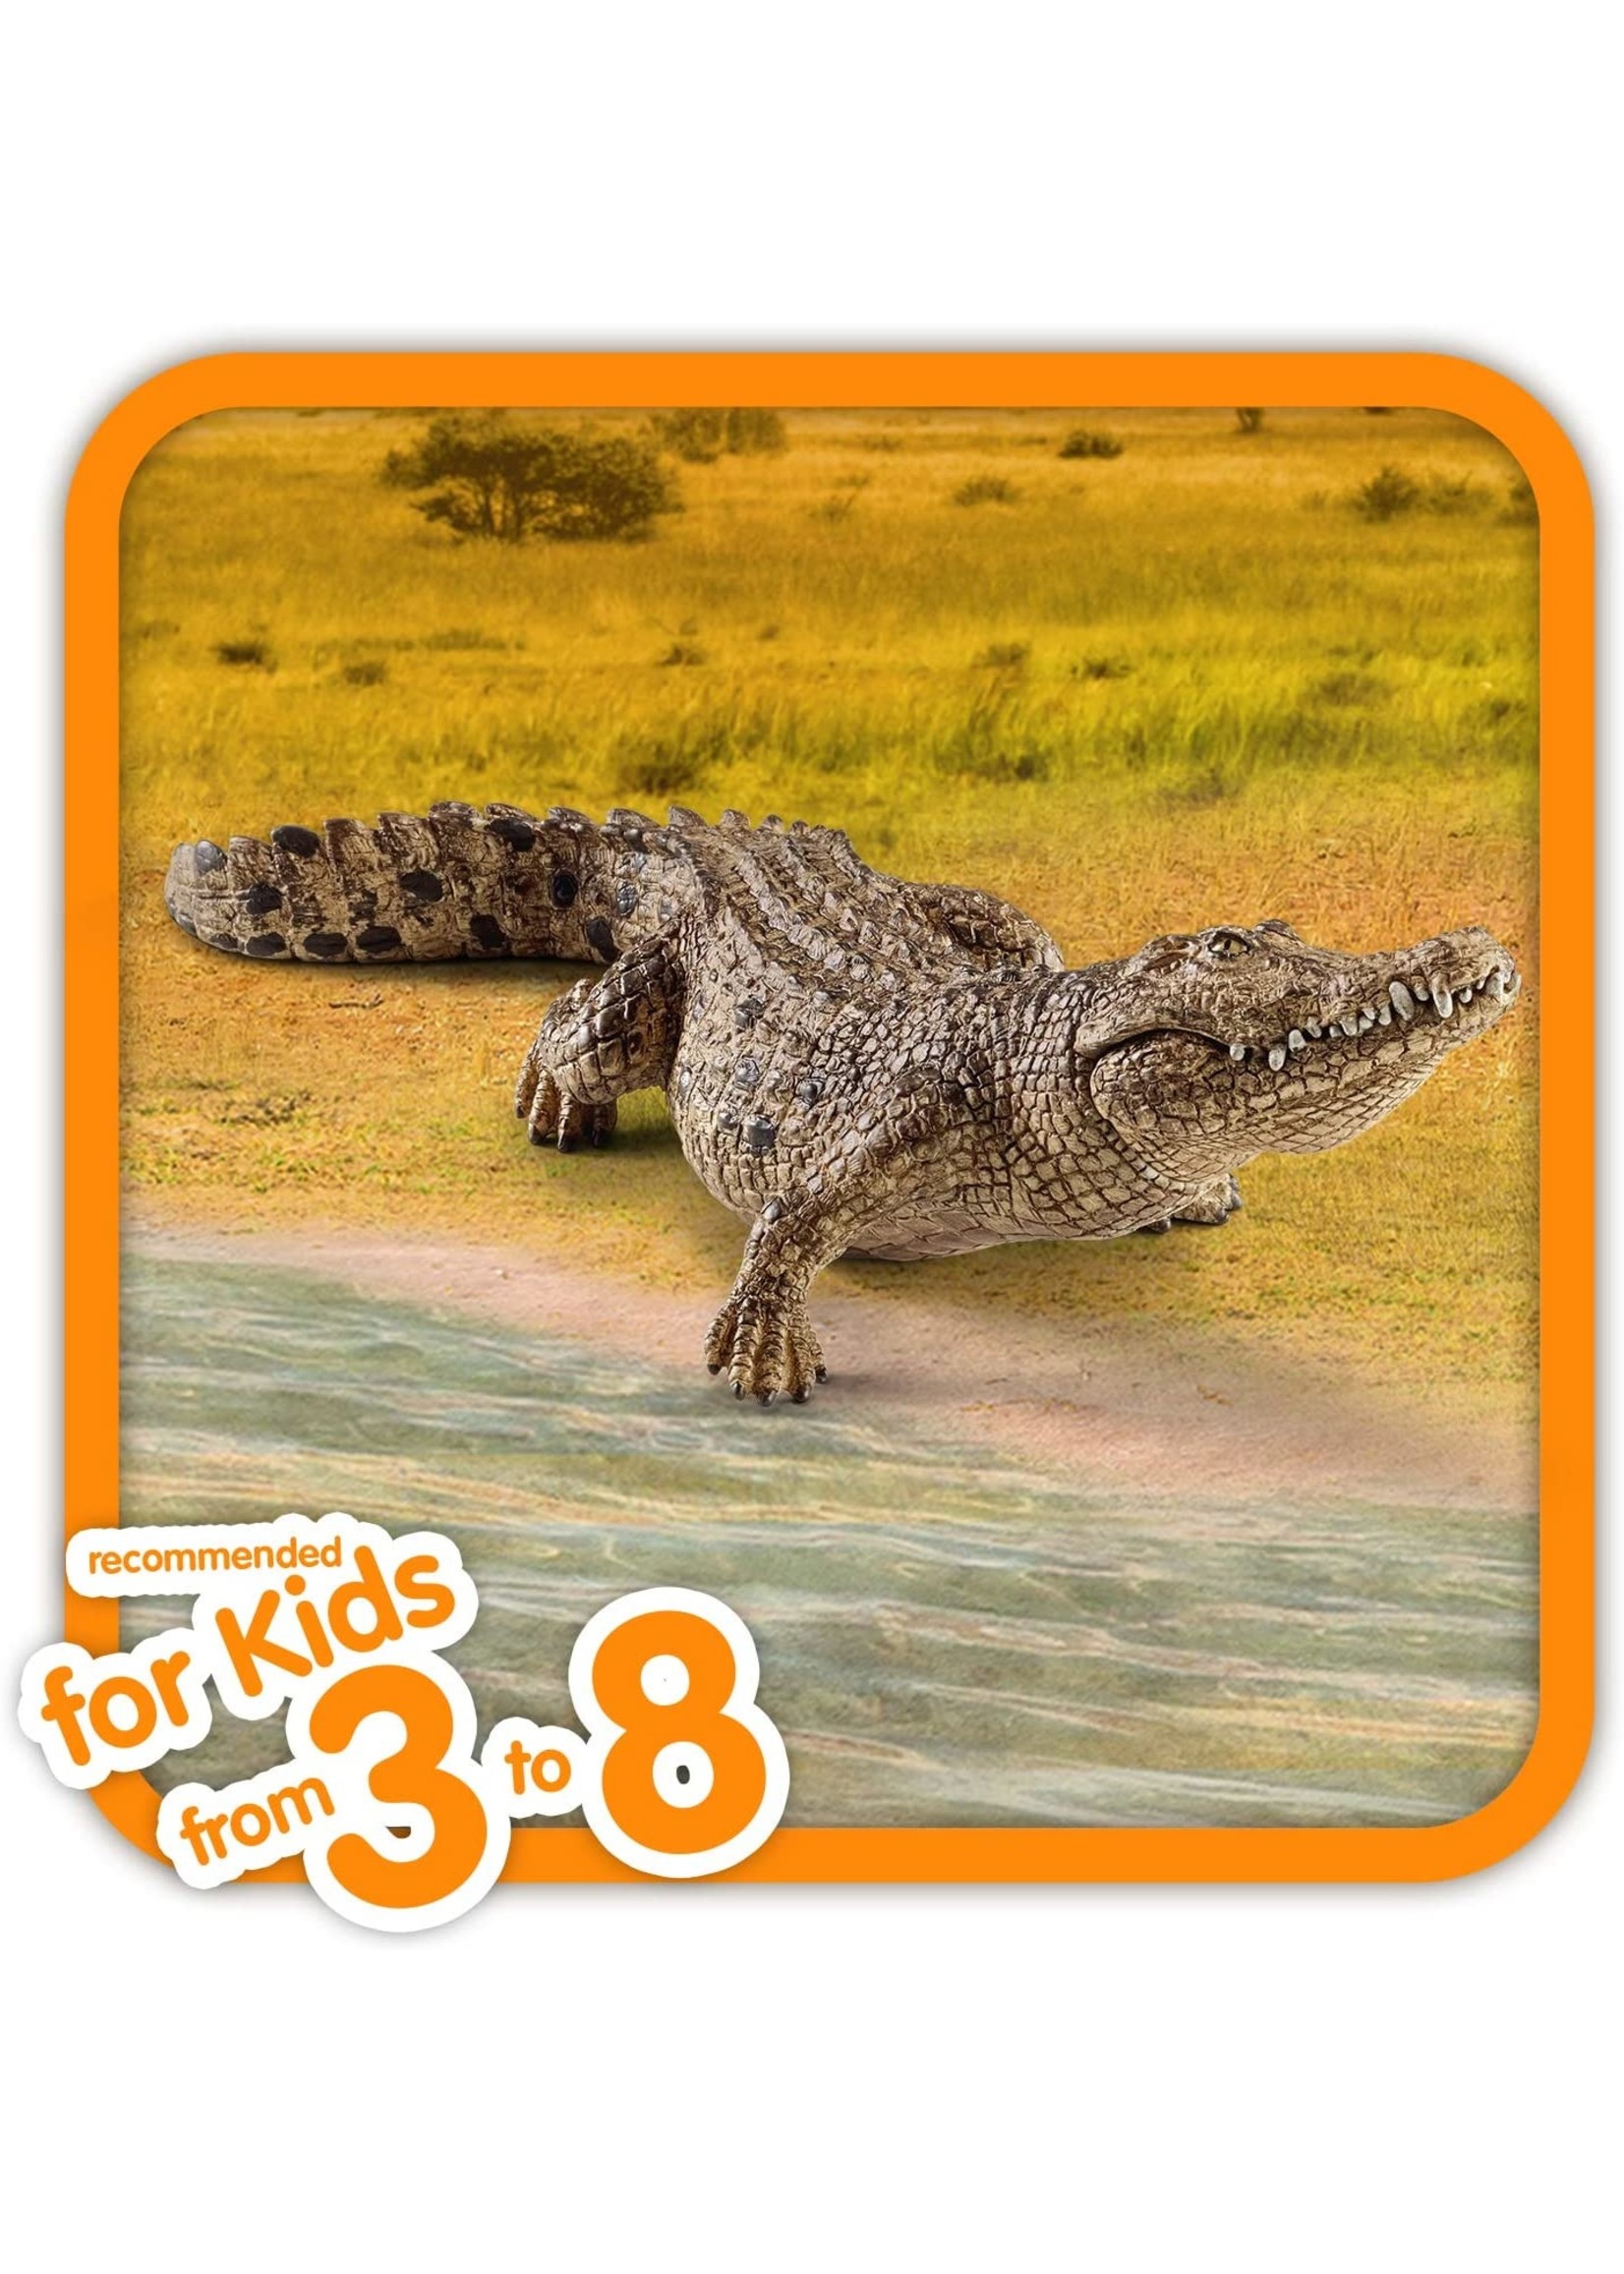 Schleich 14736 - Crocodile